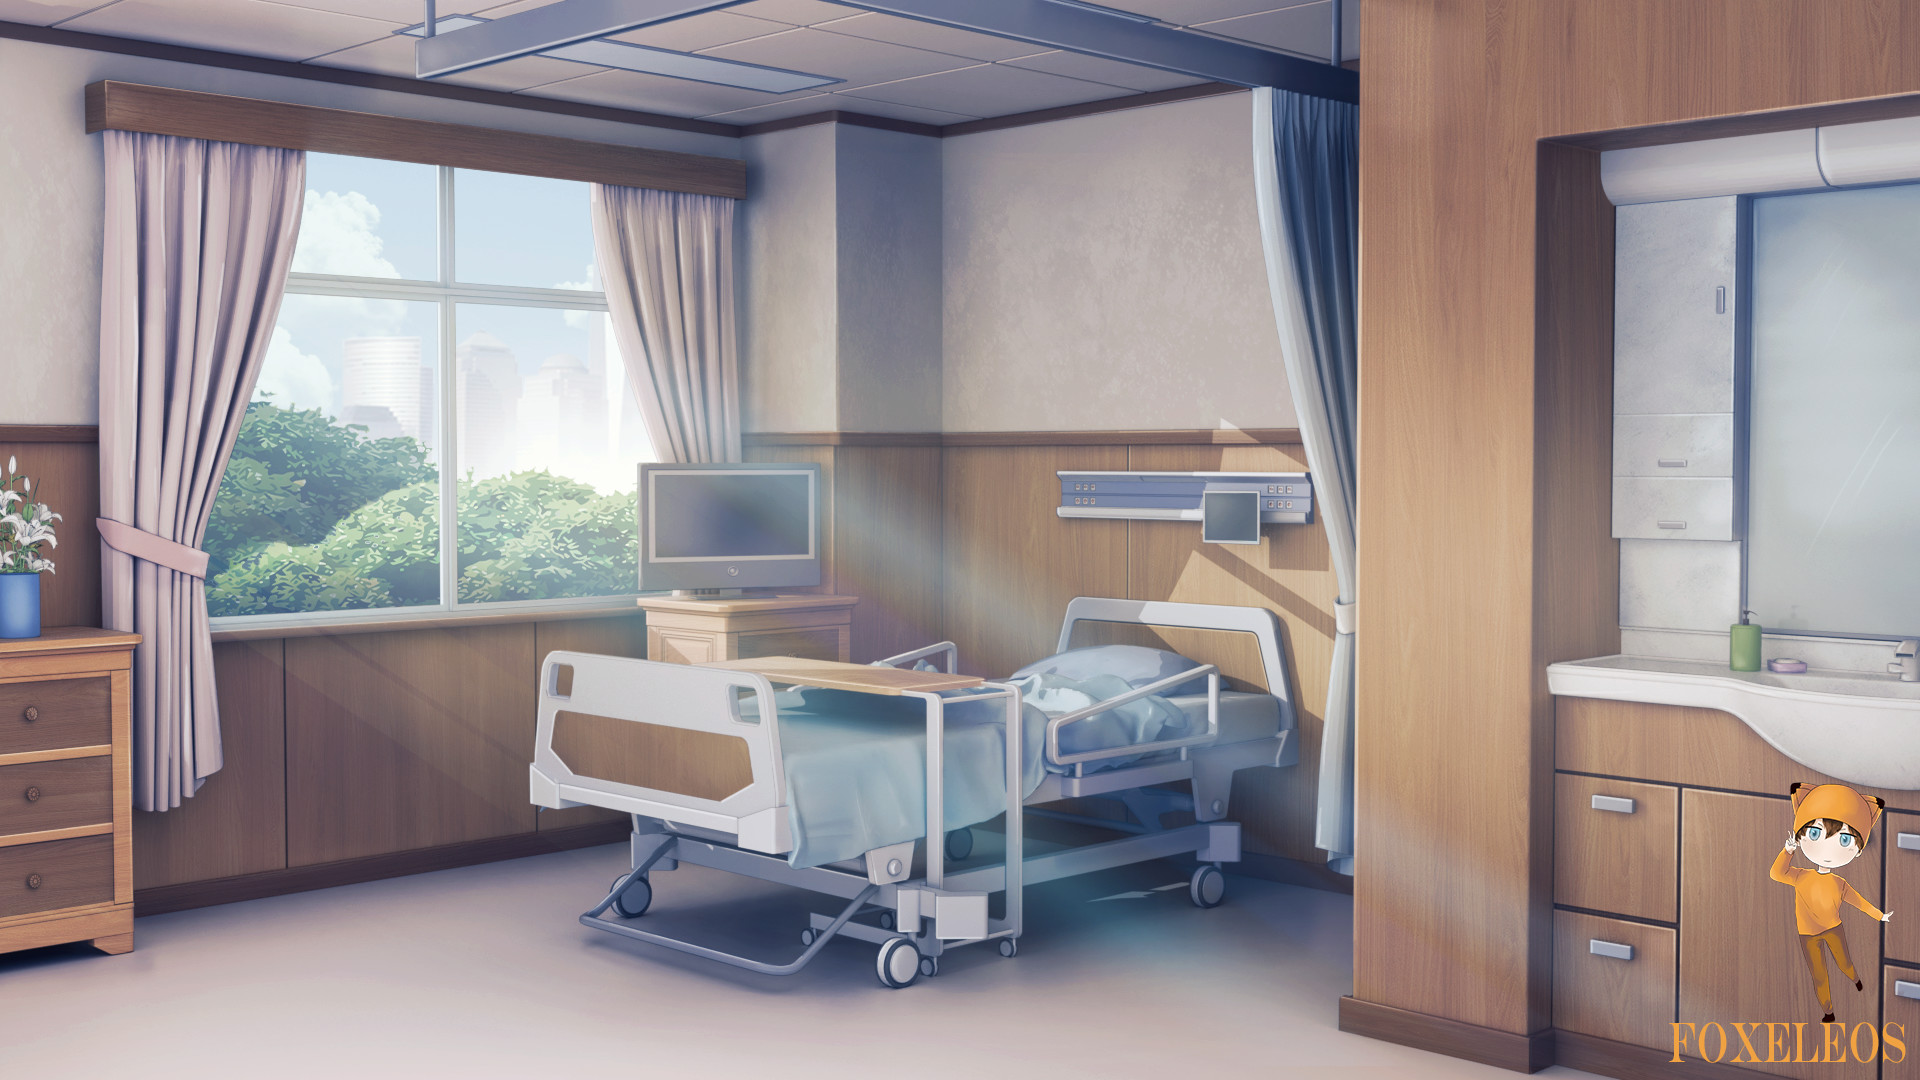 Danil Prokoshev - Hospital room